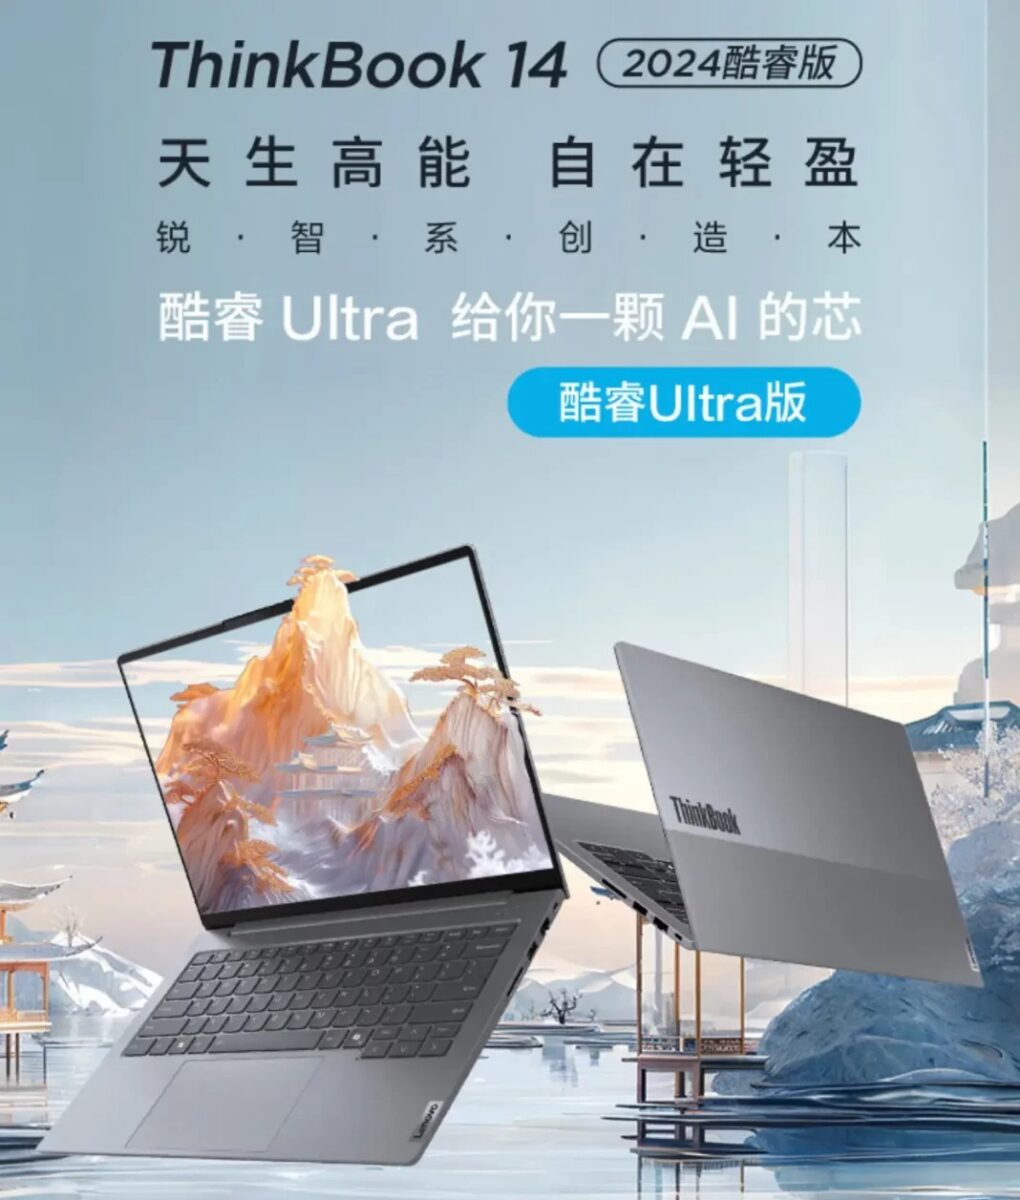 فروش لپ تاپ لنوو تینک بوک 14 2024 Core Edition در چین آغاز شد